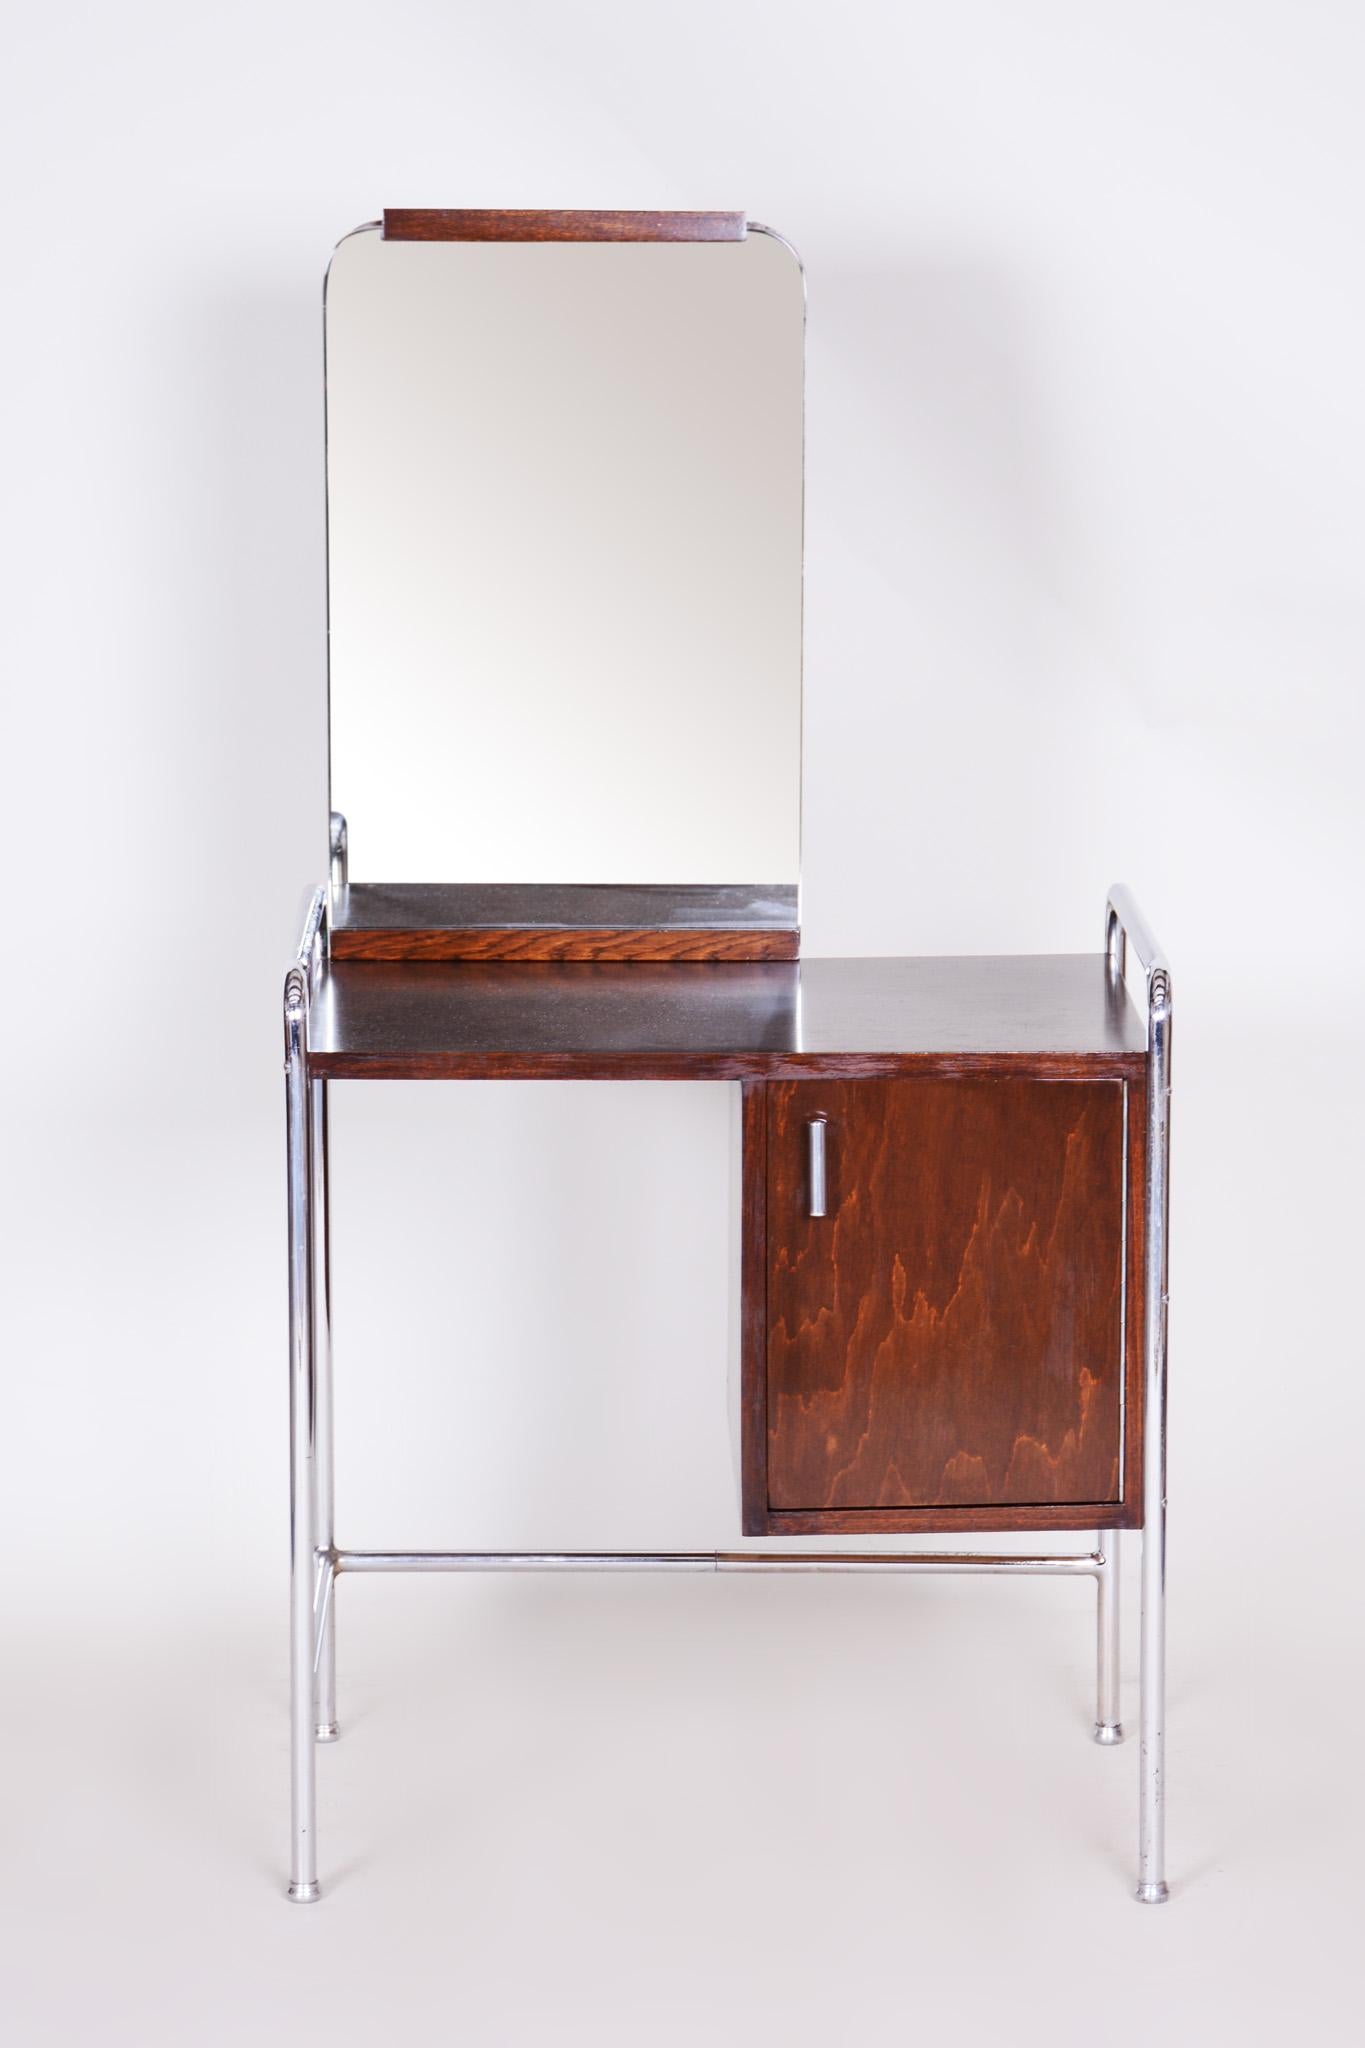 Ce miroir Bauhaus original est une représentation parfaite de l'élégance simpliste de l'ère Bauhaus.

Période : 1930 - 1939
Origine : Tchécoslovaquie (Bohème)
Matériau : Hêtre et acier chromé.